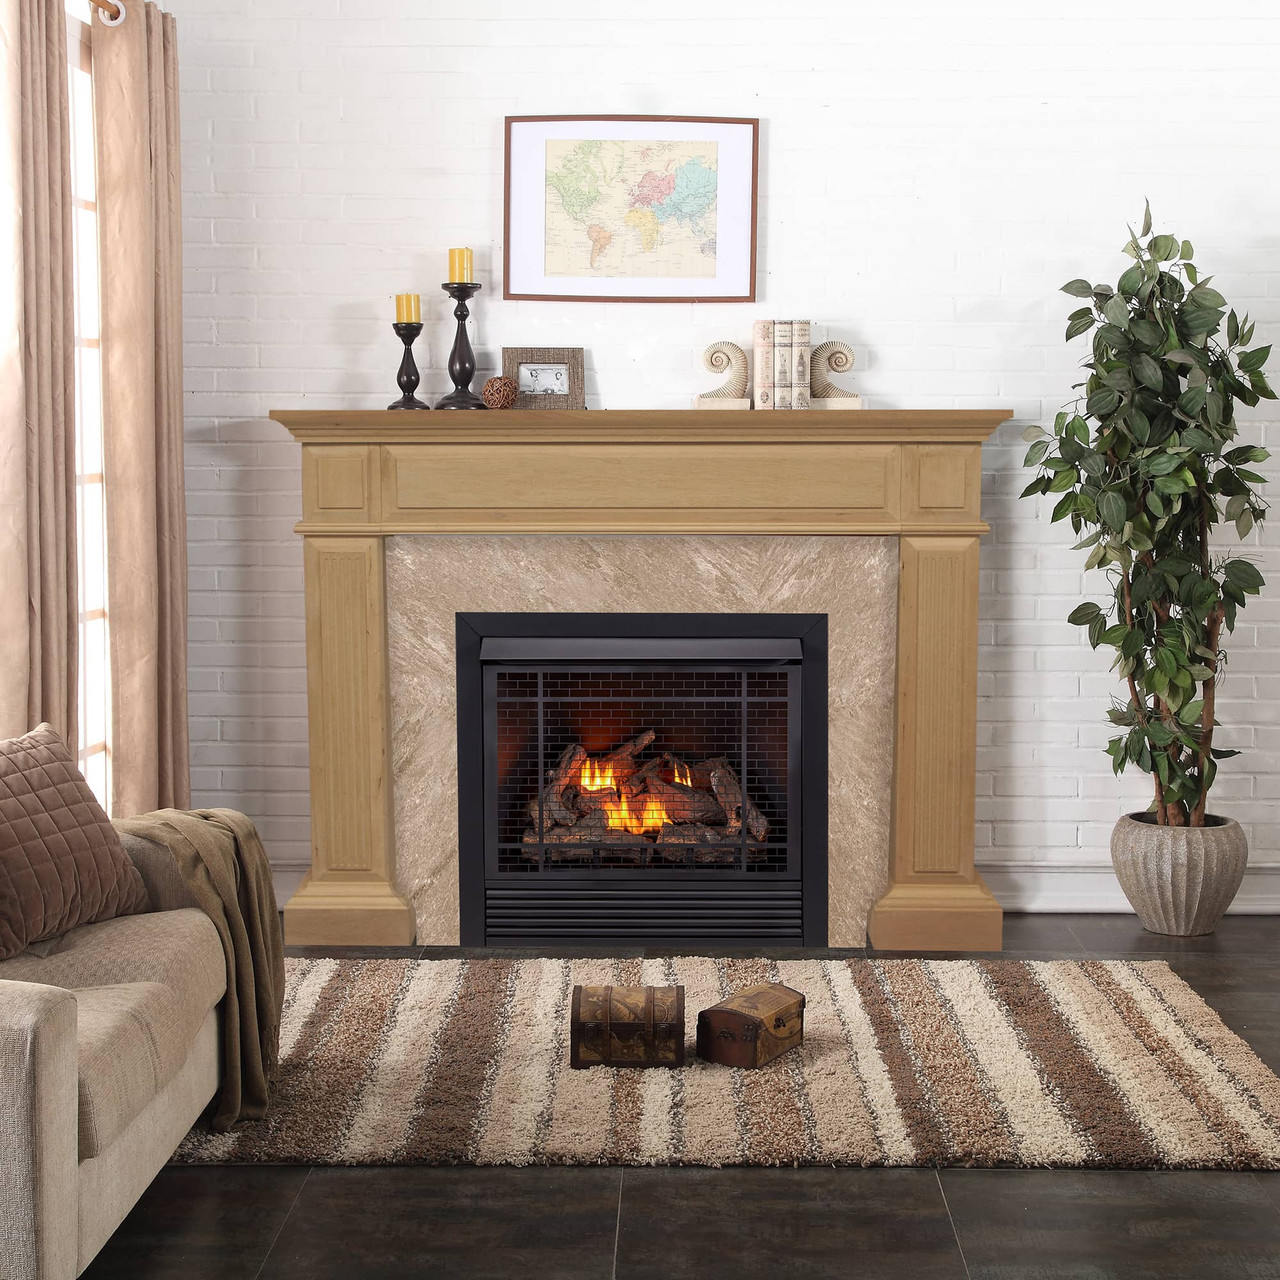 Fireplace Mantel Surround in Unfinished Oak - Model# FM32-6-U